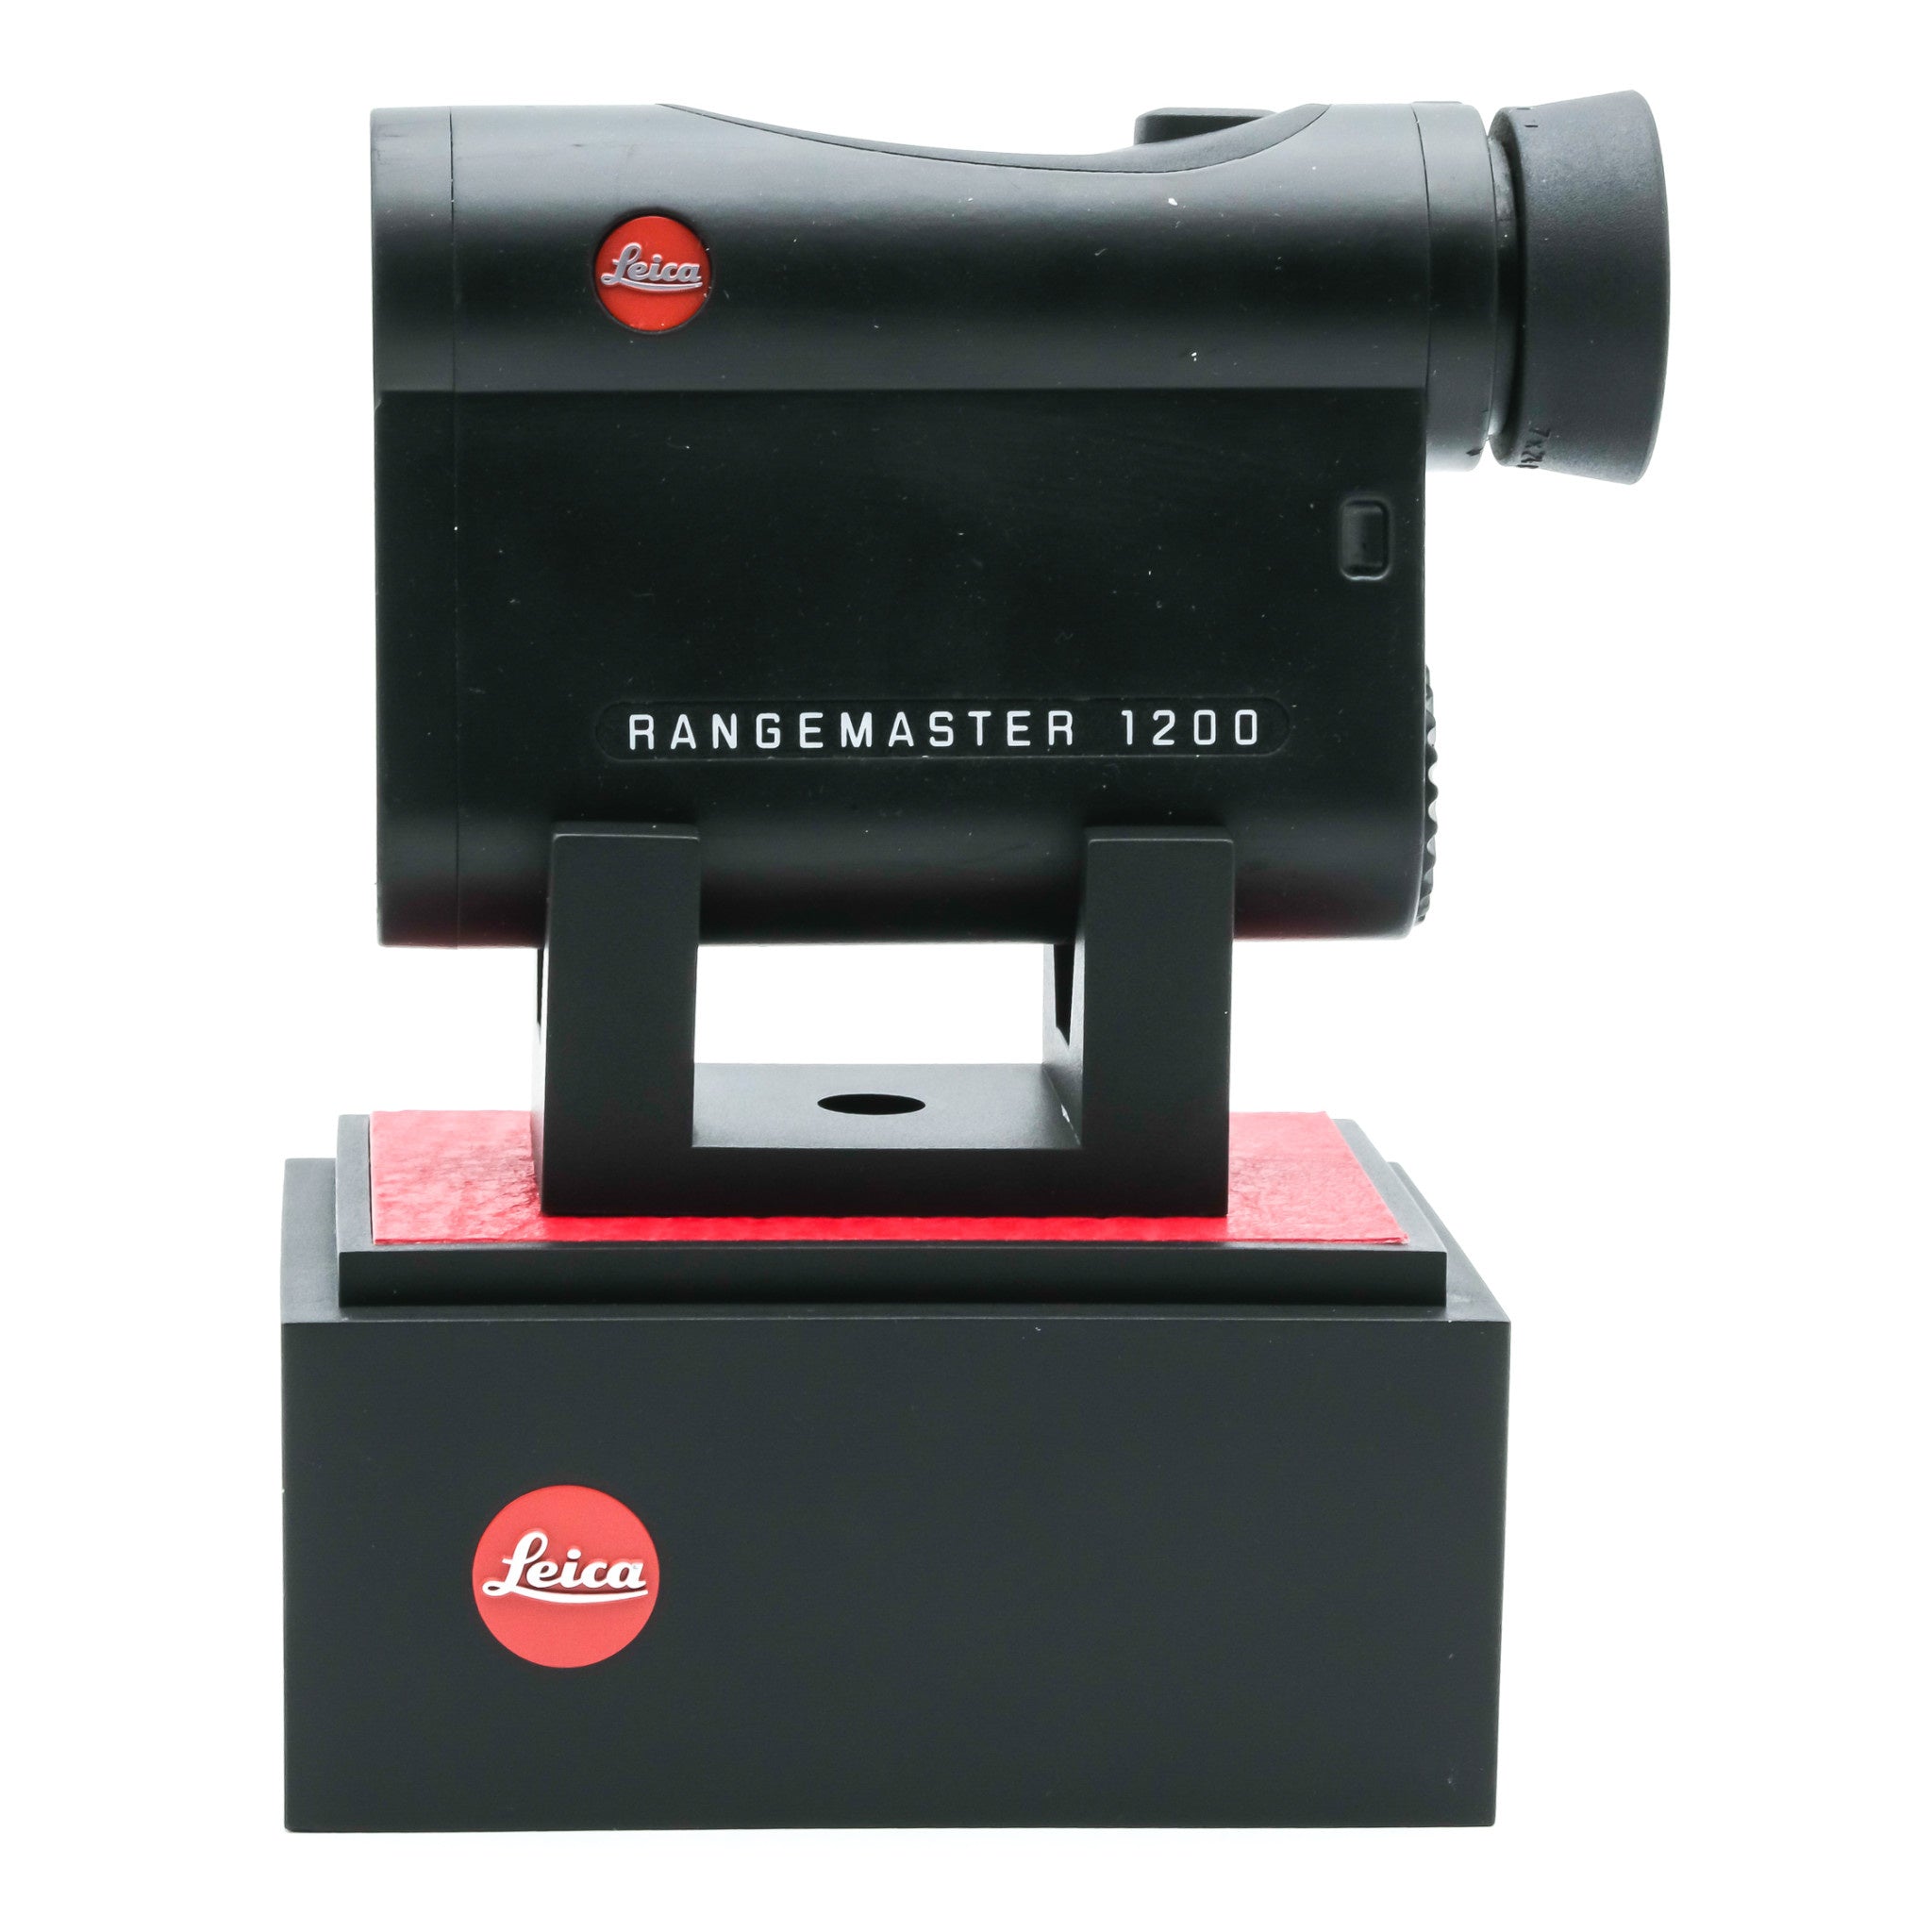 Rangemaster 1200